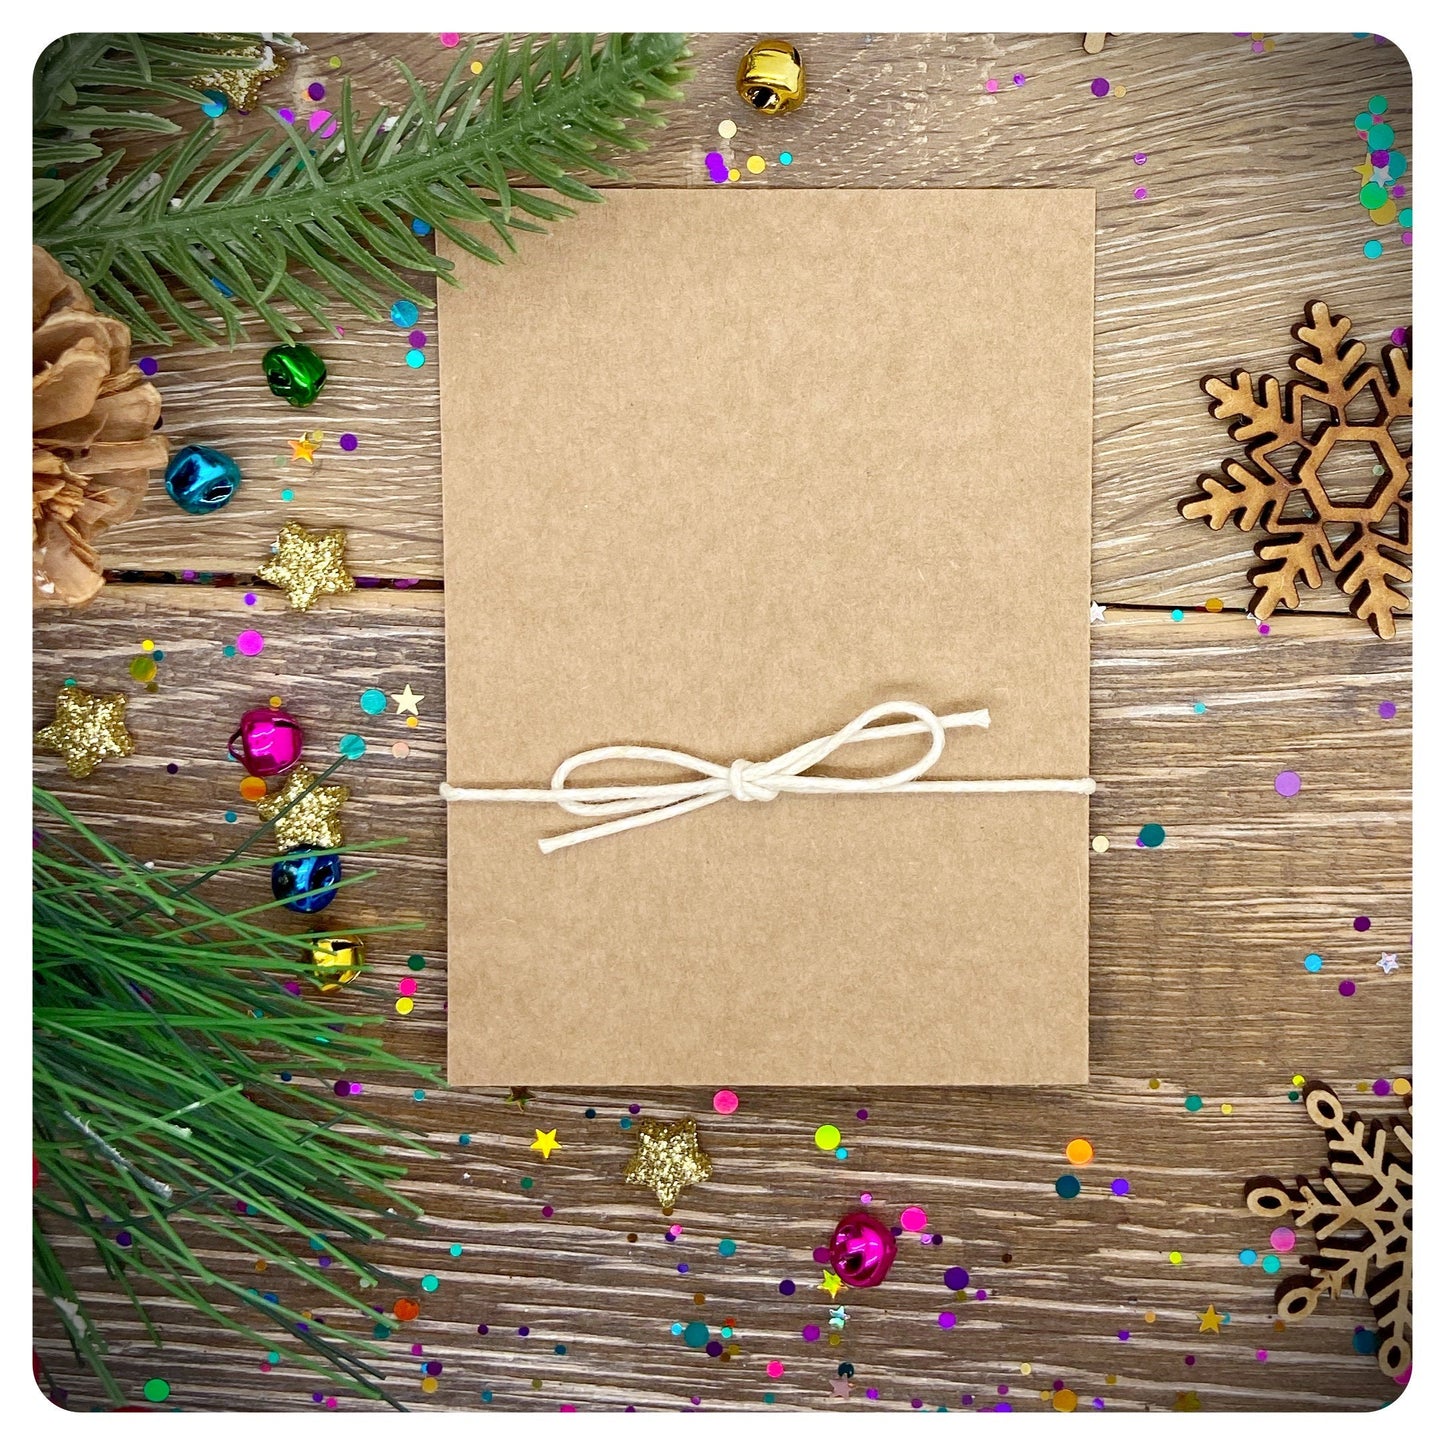 Save The Seas Christmas Card, Christmas Eco Wish Bracelet, Xmas Postal, Eco Gift, Save The Sea- Sons Greetings Card